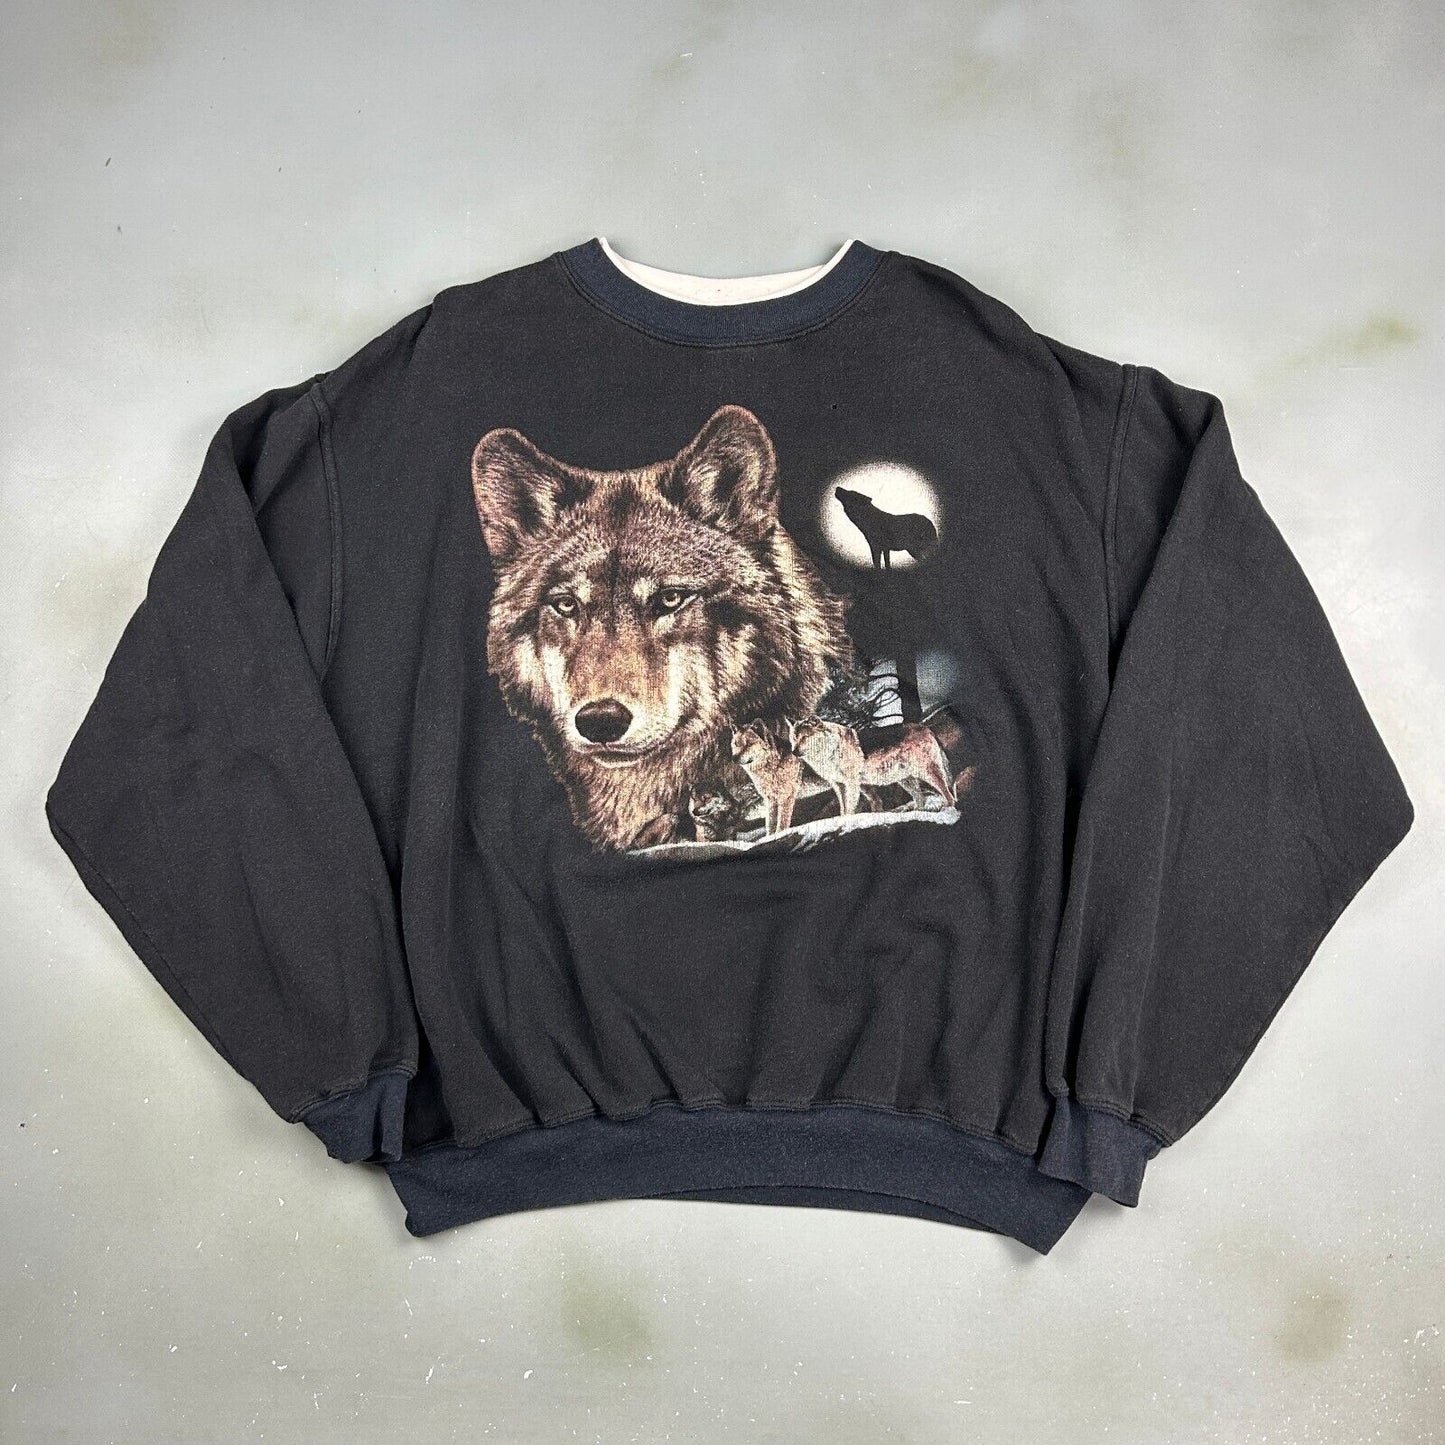 VINTAGE 90s Wolves Nature Graphic Black Crewneck Sweater sz Large Adult